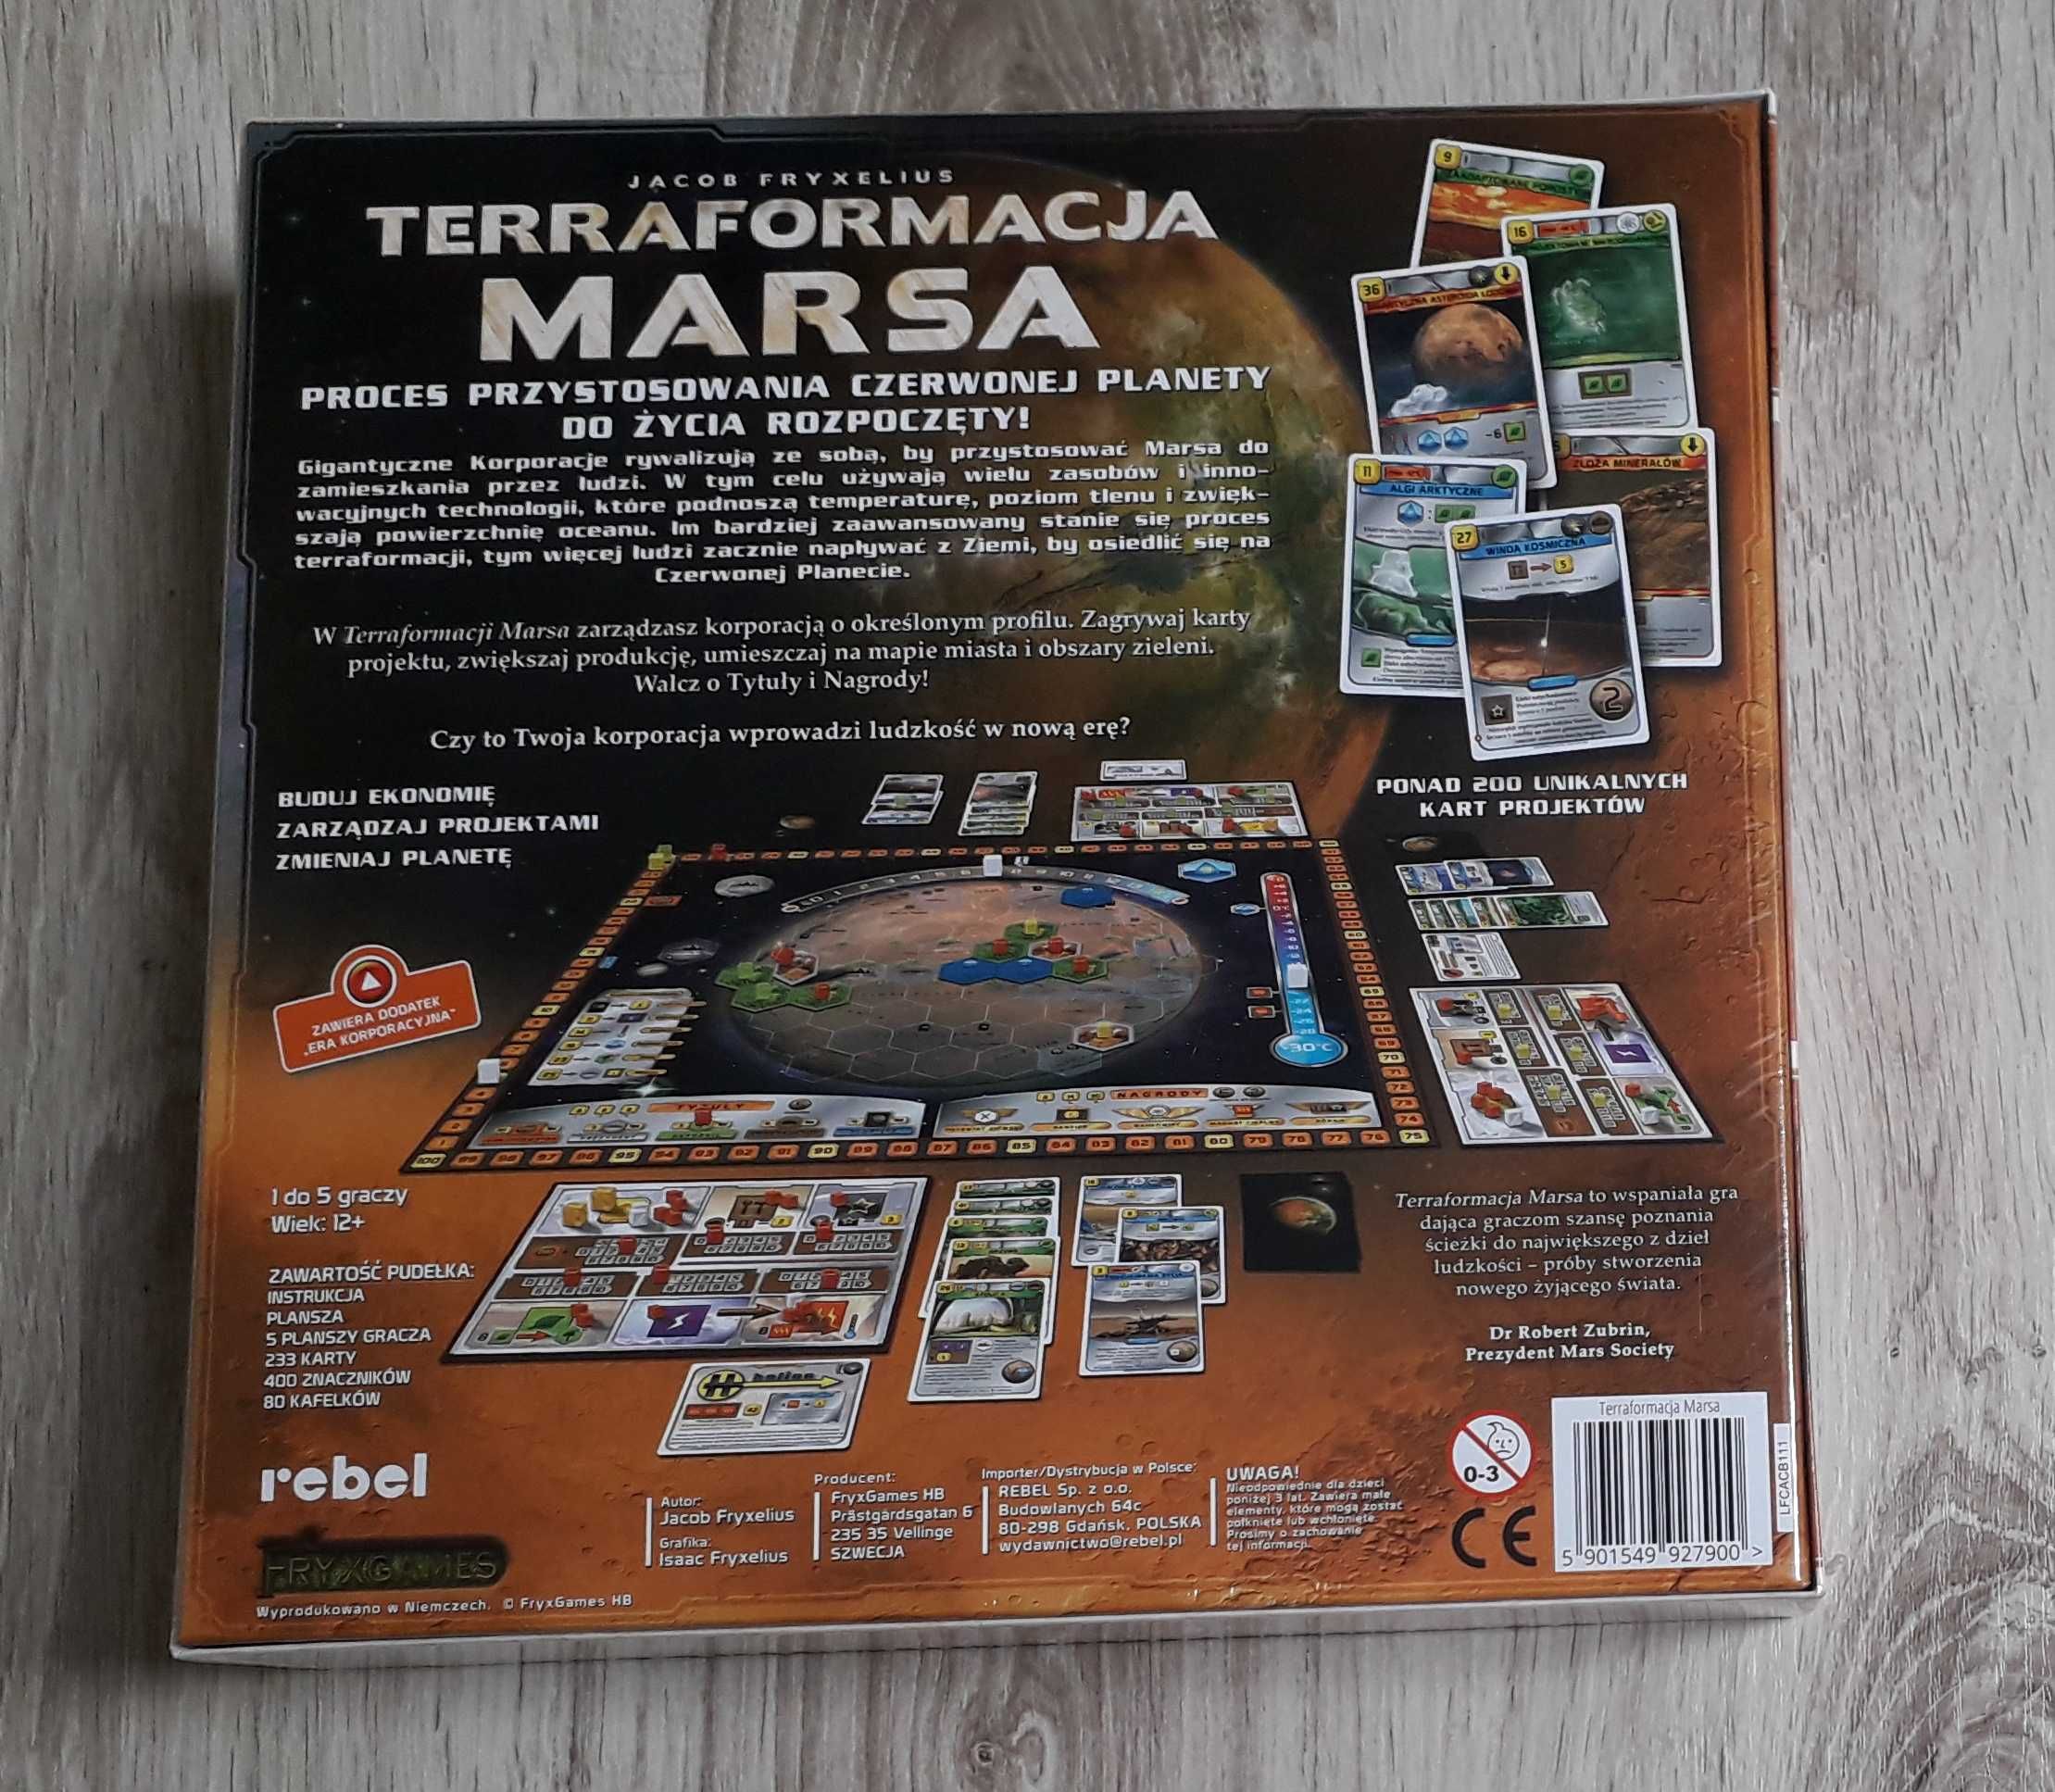 Terraformacja Marsa, gra planszowa, nowa, w folii